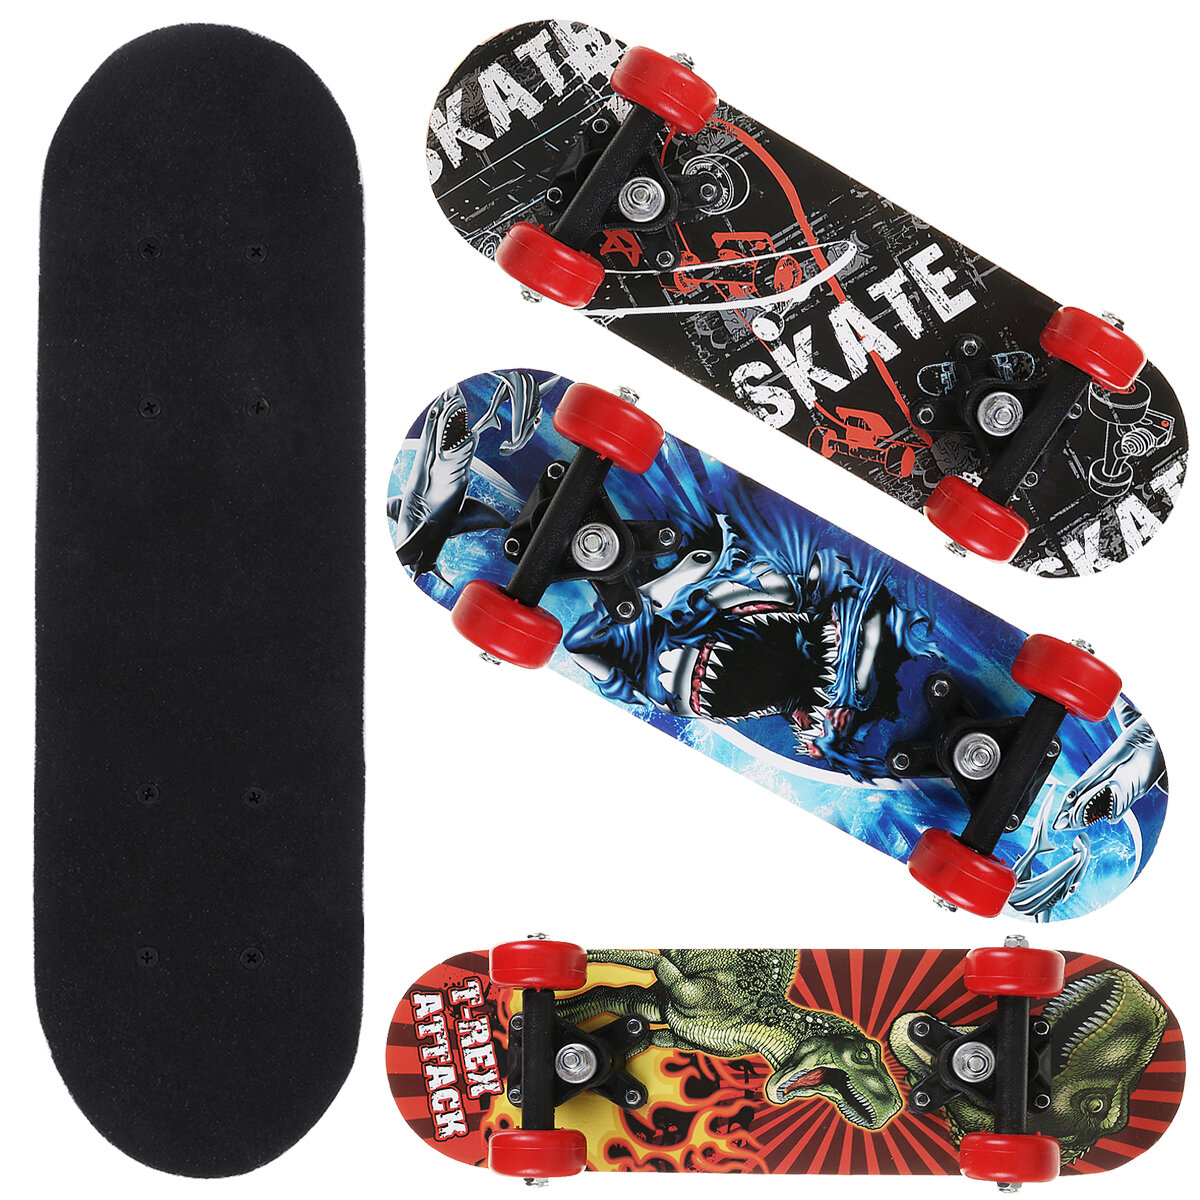 43cm Kids Skateboard 7 Layer Maple Wood Adult Tricks Longboard for Beginner Gift